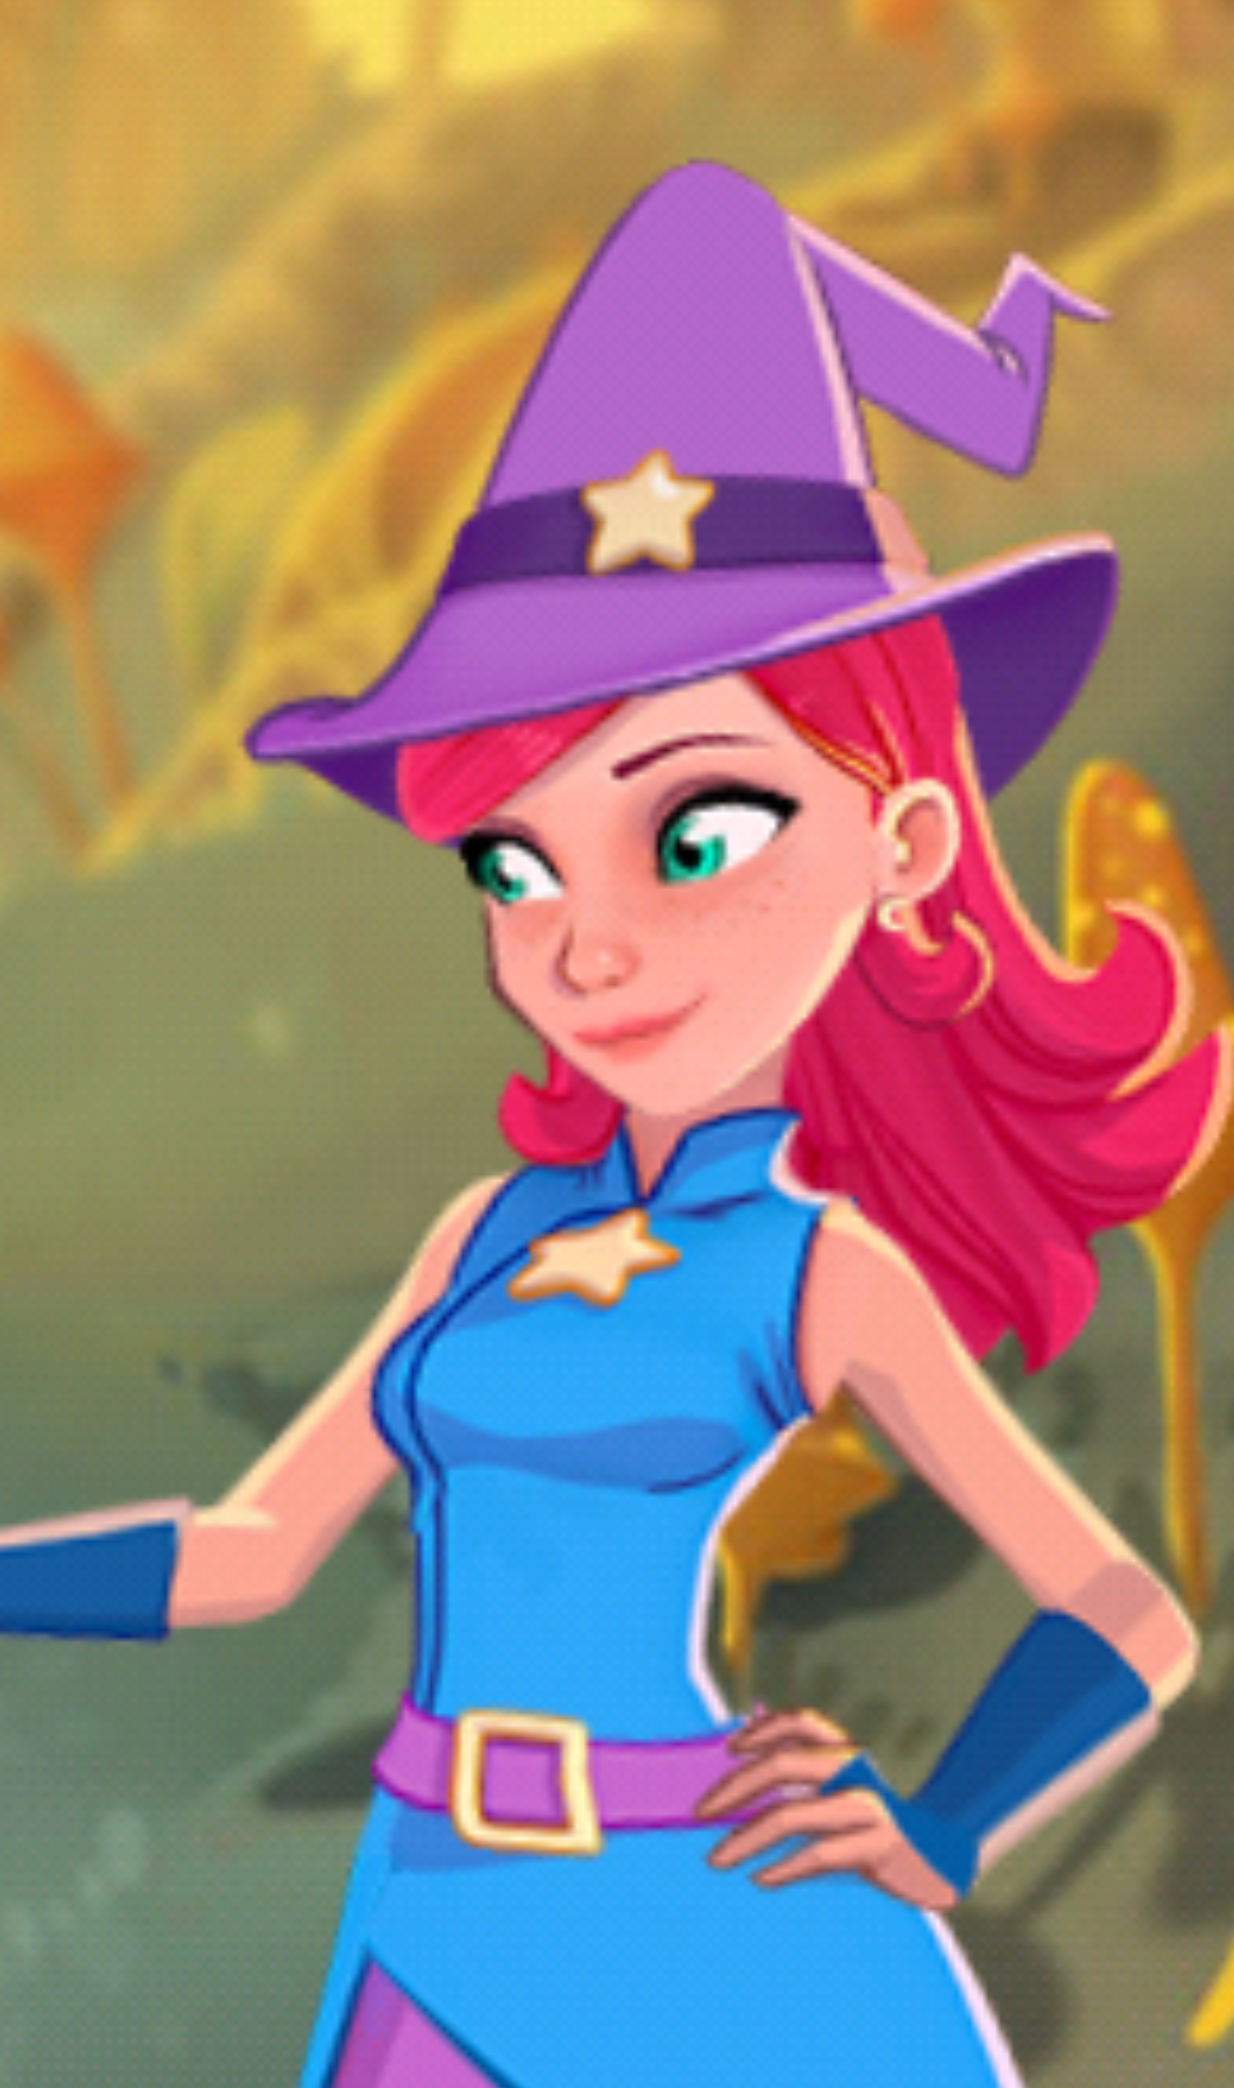 Stella | Bubble Witch 3 Saga Wikia | FANDOM powered by Wikia